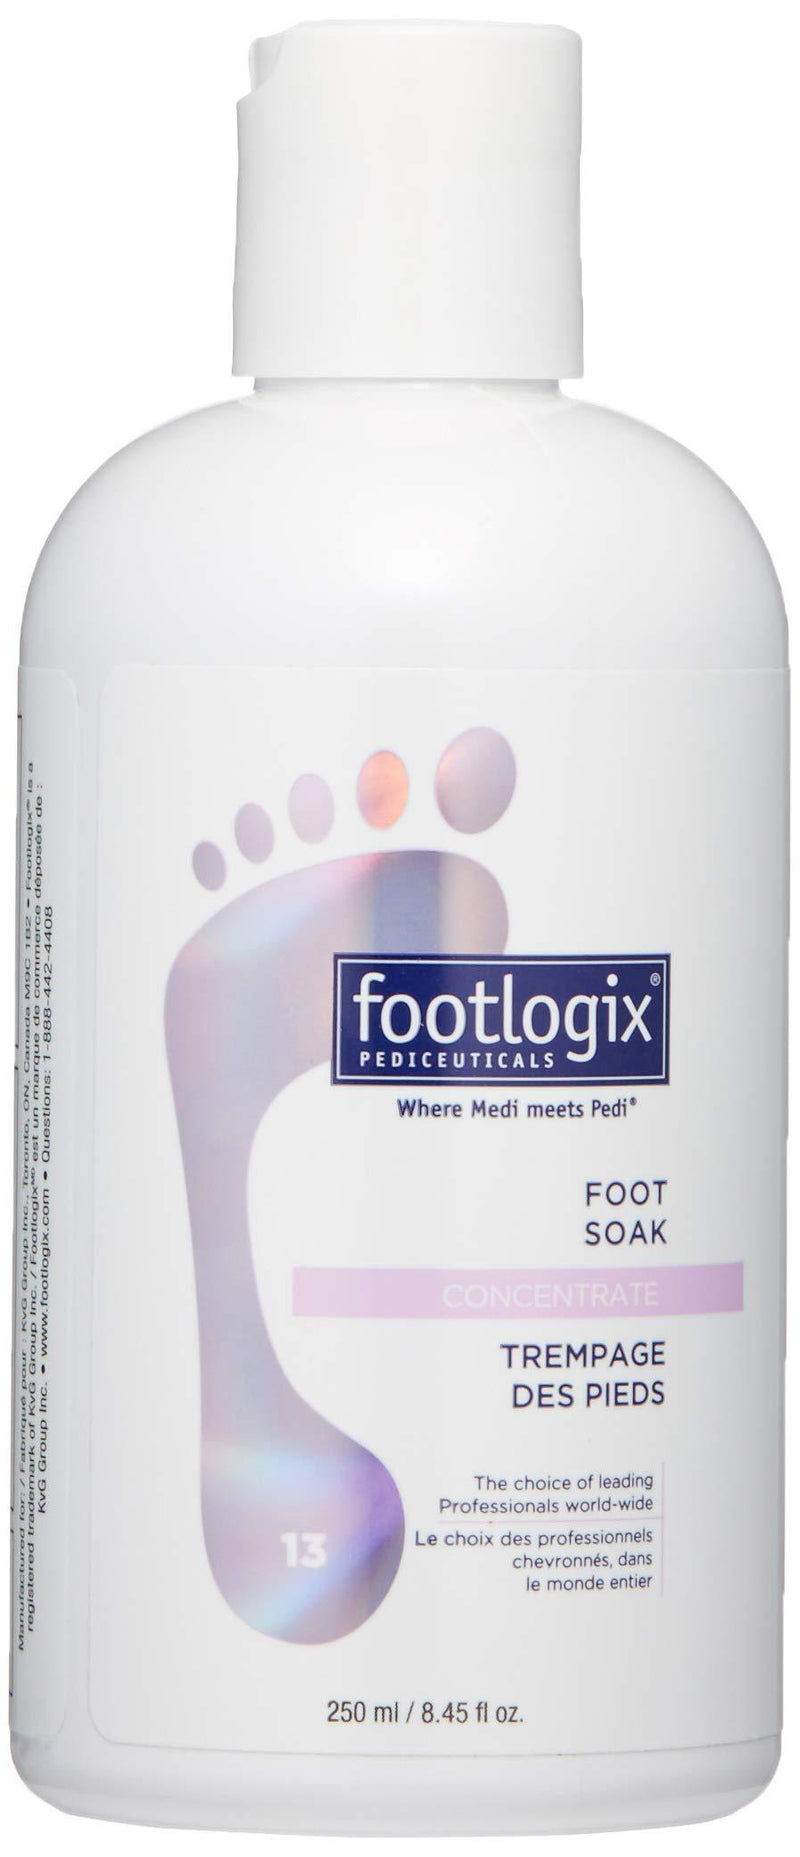 FOOTLOGIX Foot Soak Concentrate, 8.45 Fl oz - BeesActive Australia